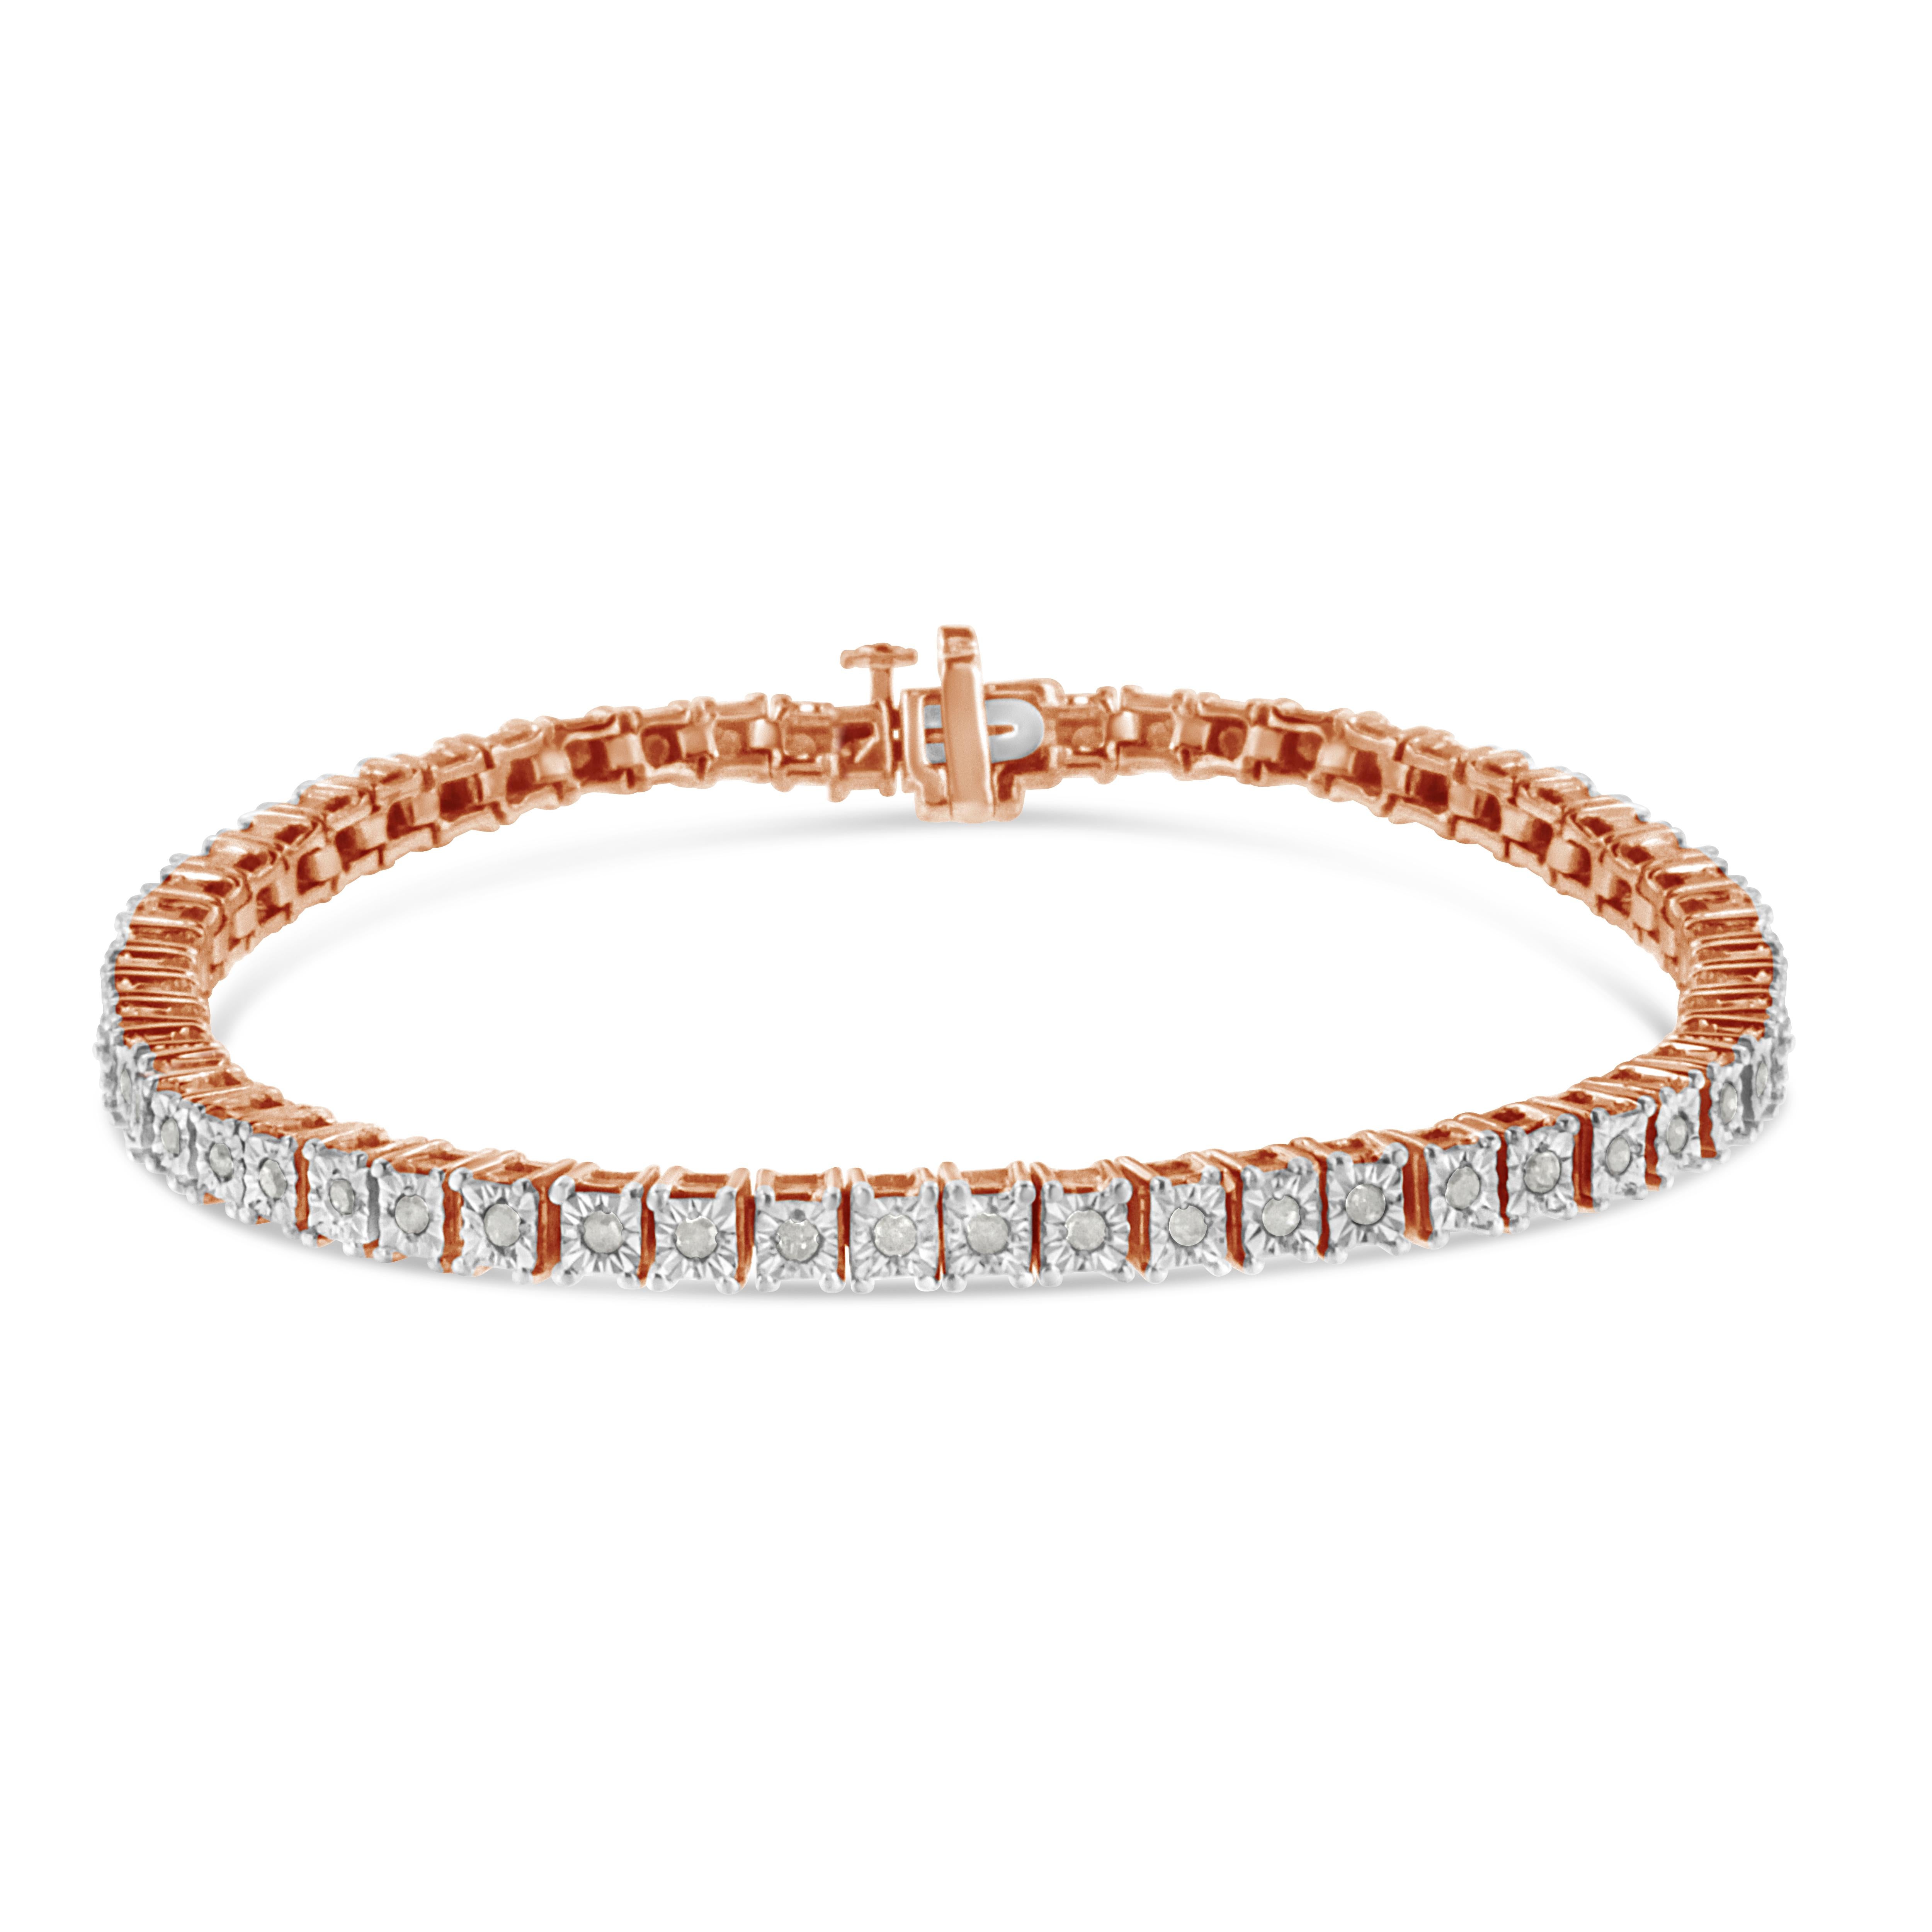 Ce bracelet tennis féminin et glamour est composé des plus beaux diamants taillés en rose et à facettes multiples, qui rappellent le style Art déco des bijoux de l'époque. Serties dans des maillons carrés en argent sterling véritable et massif (925)